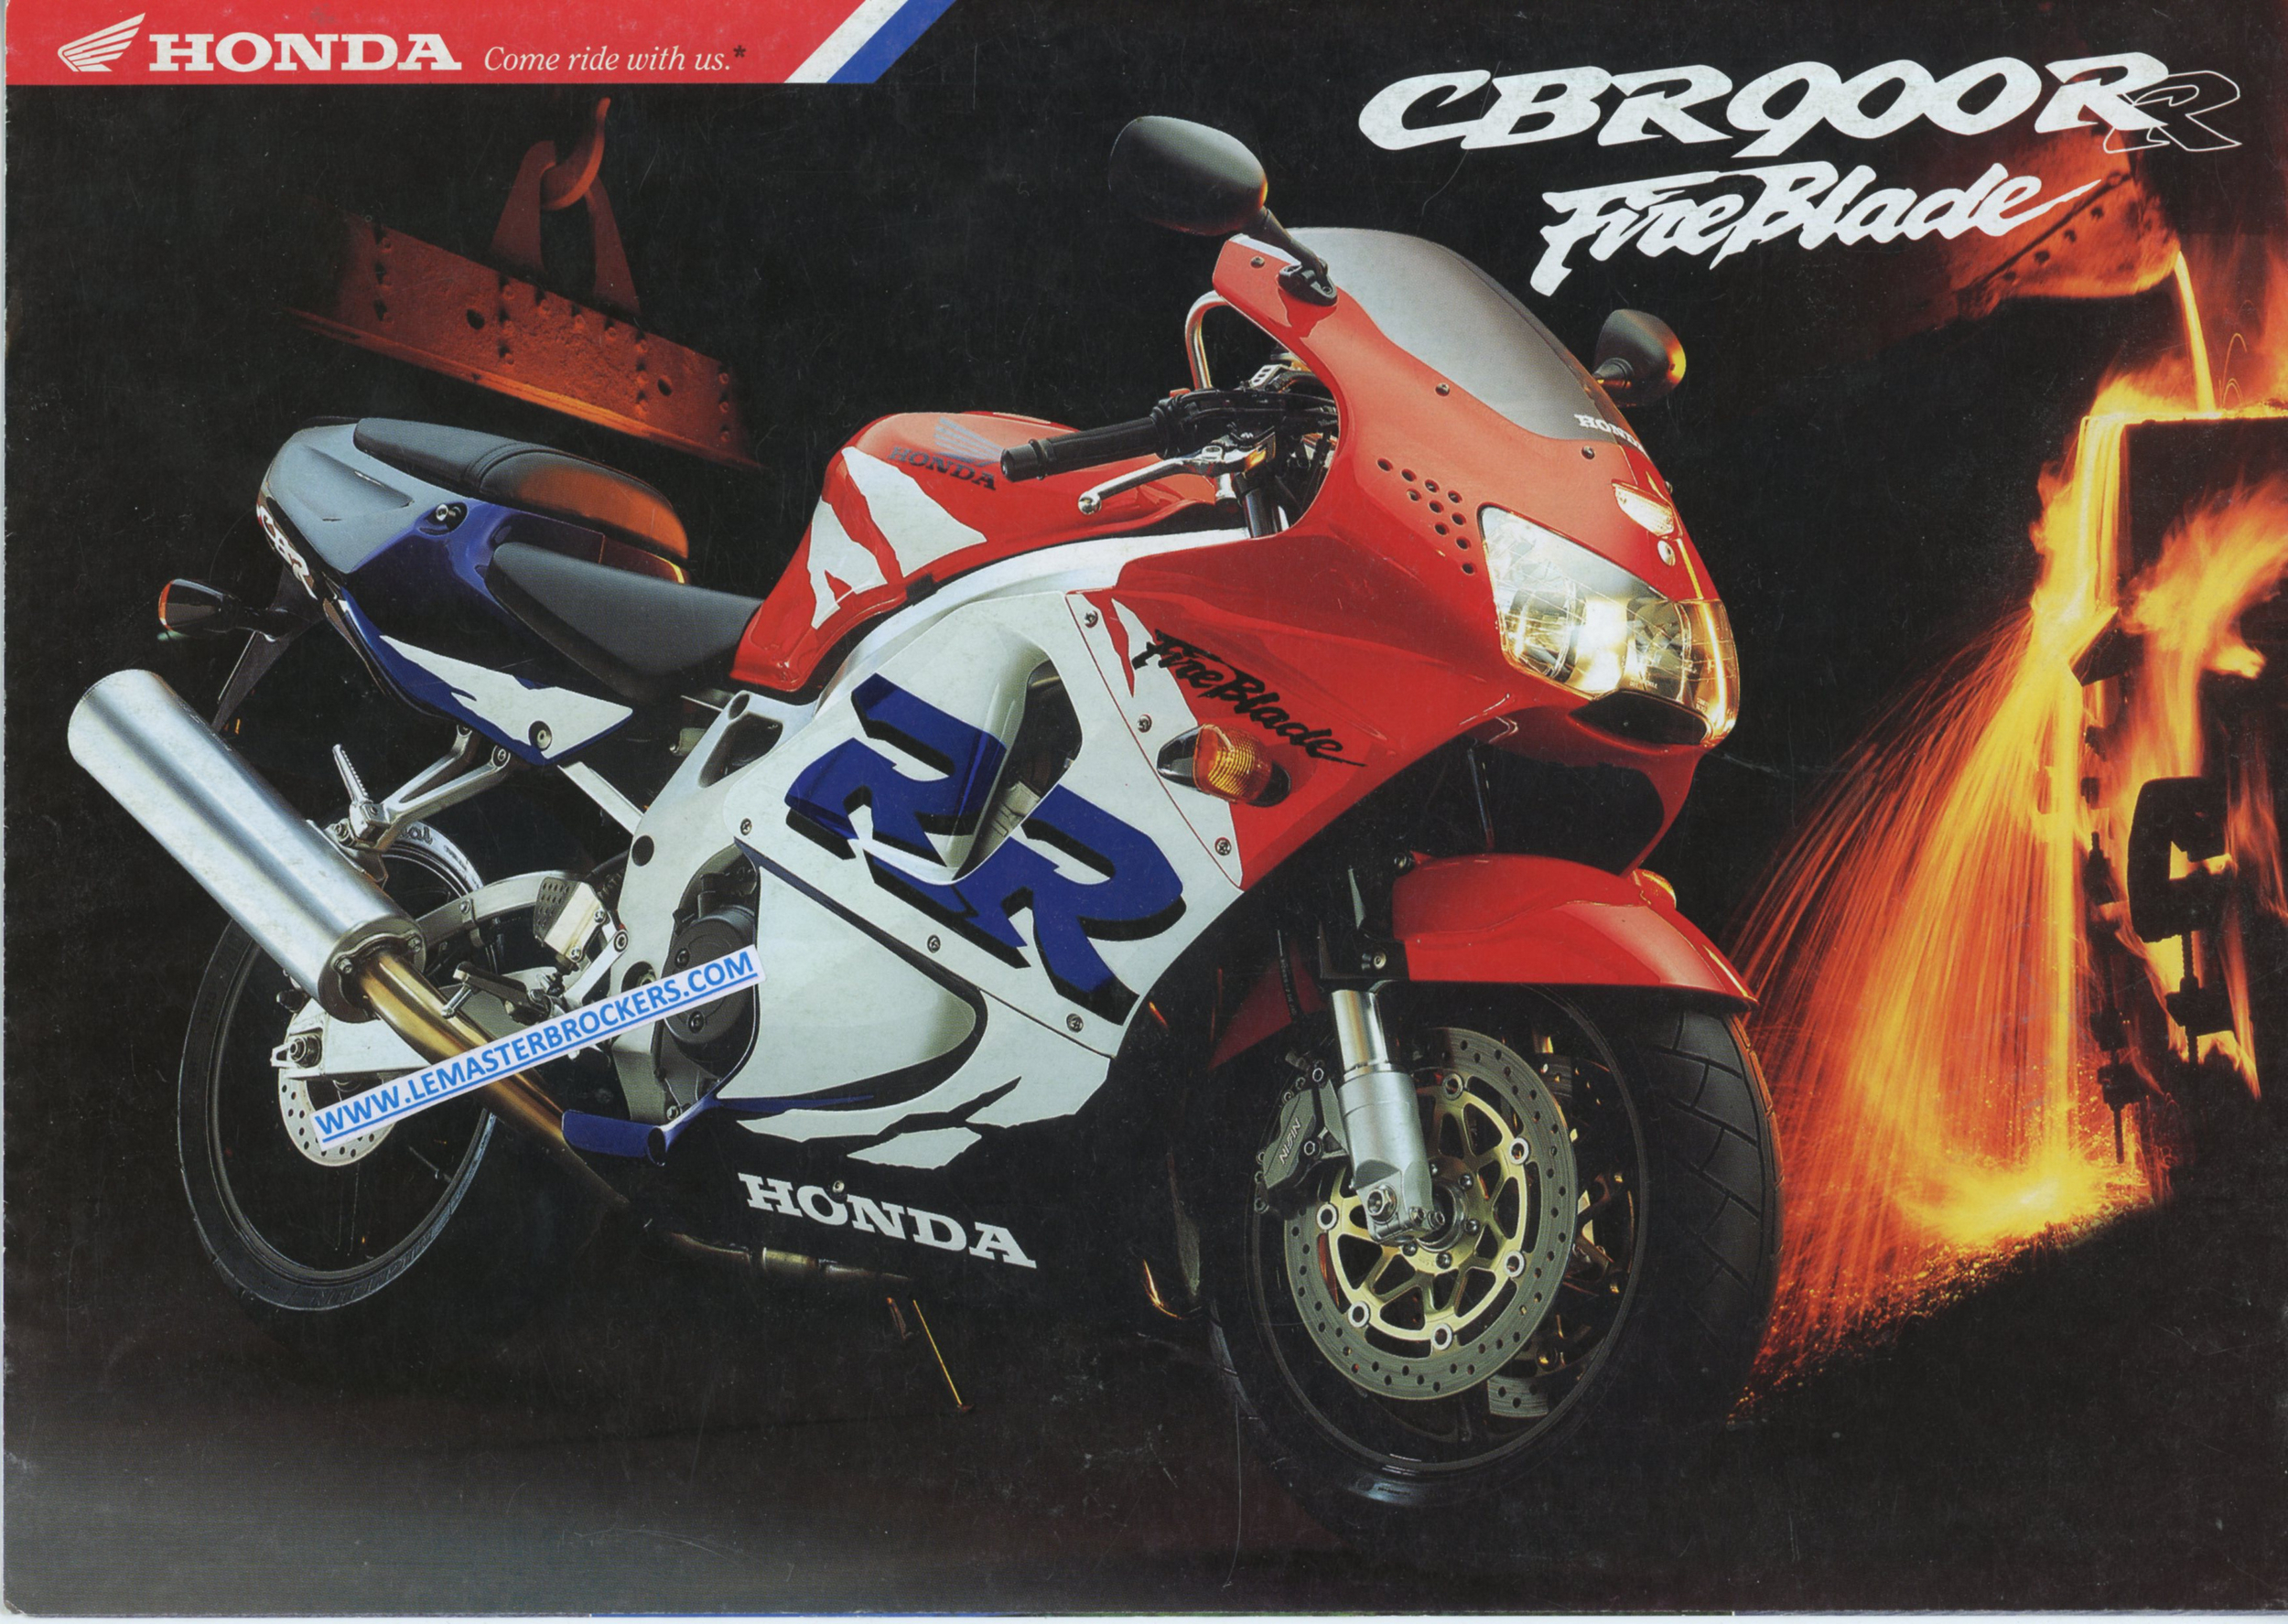 BROCHURE-MOTO-HONDA-CBR-900-RR-FIREBLADE-CBR900-CBR900RR-1998-1999-LEMASTERBROCKERS